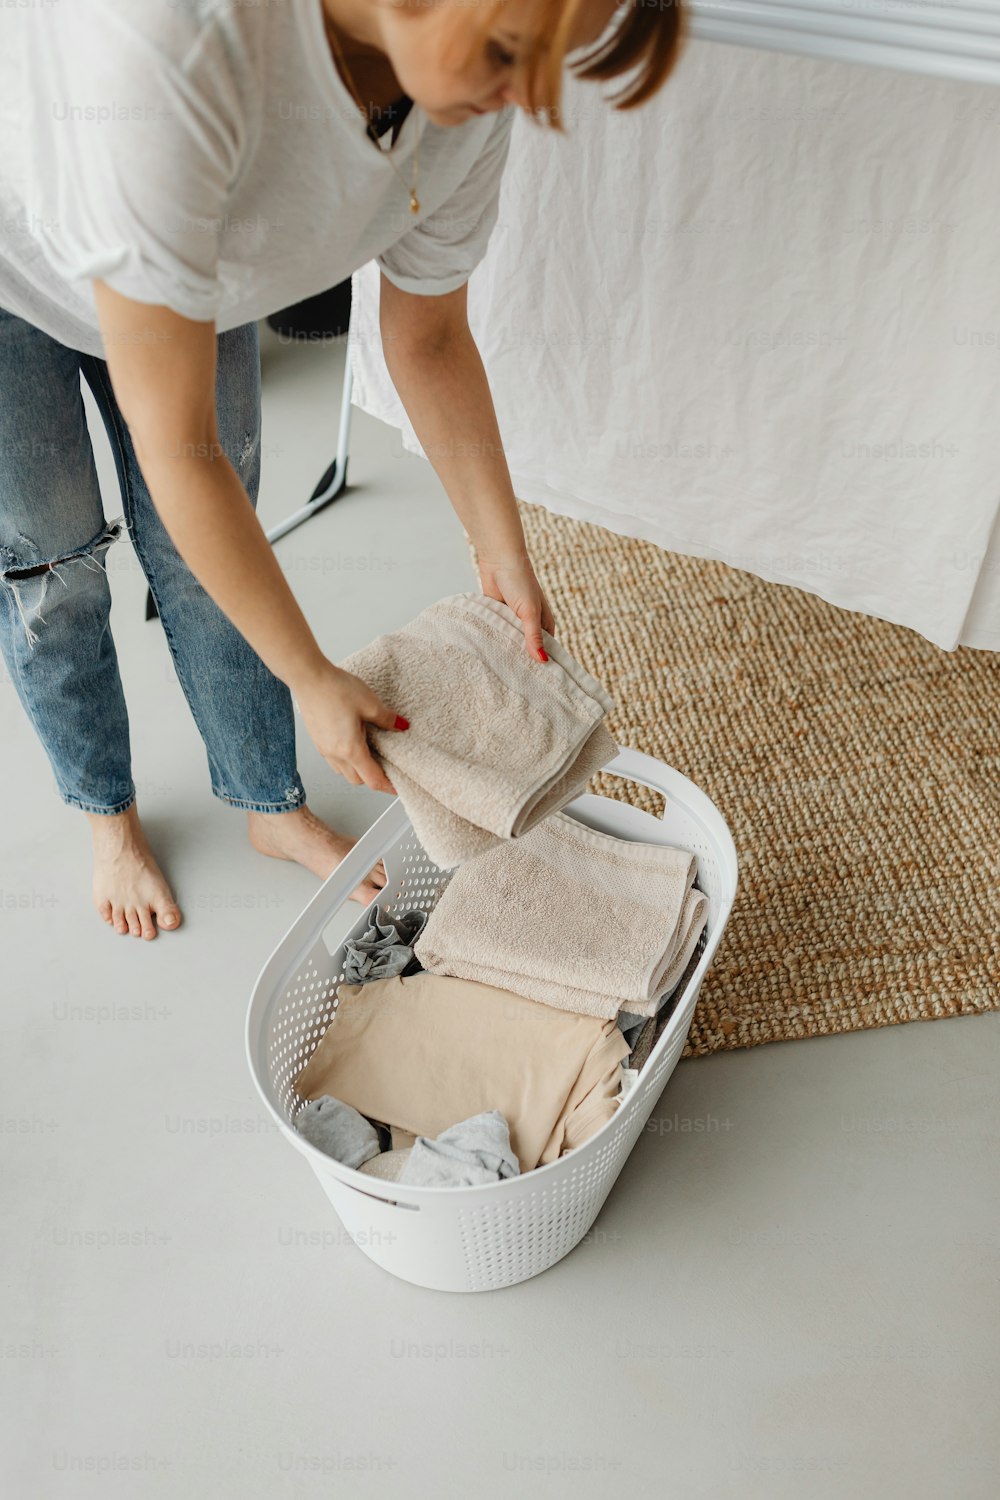 Una mujer desempacando ropa en una canasta